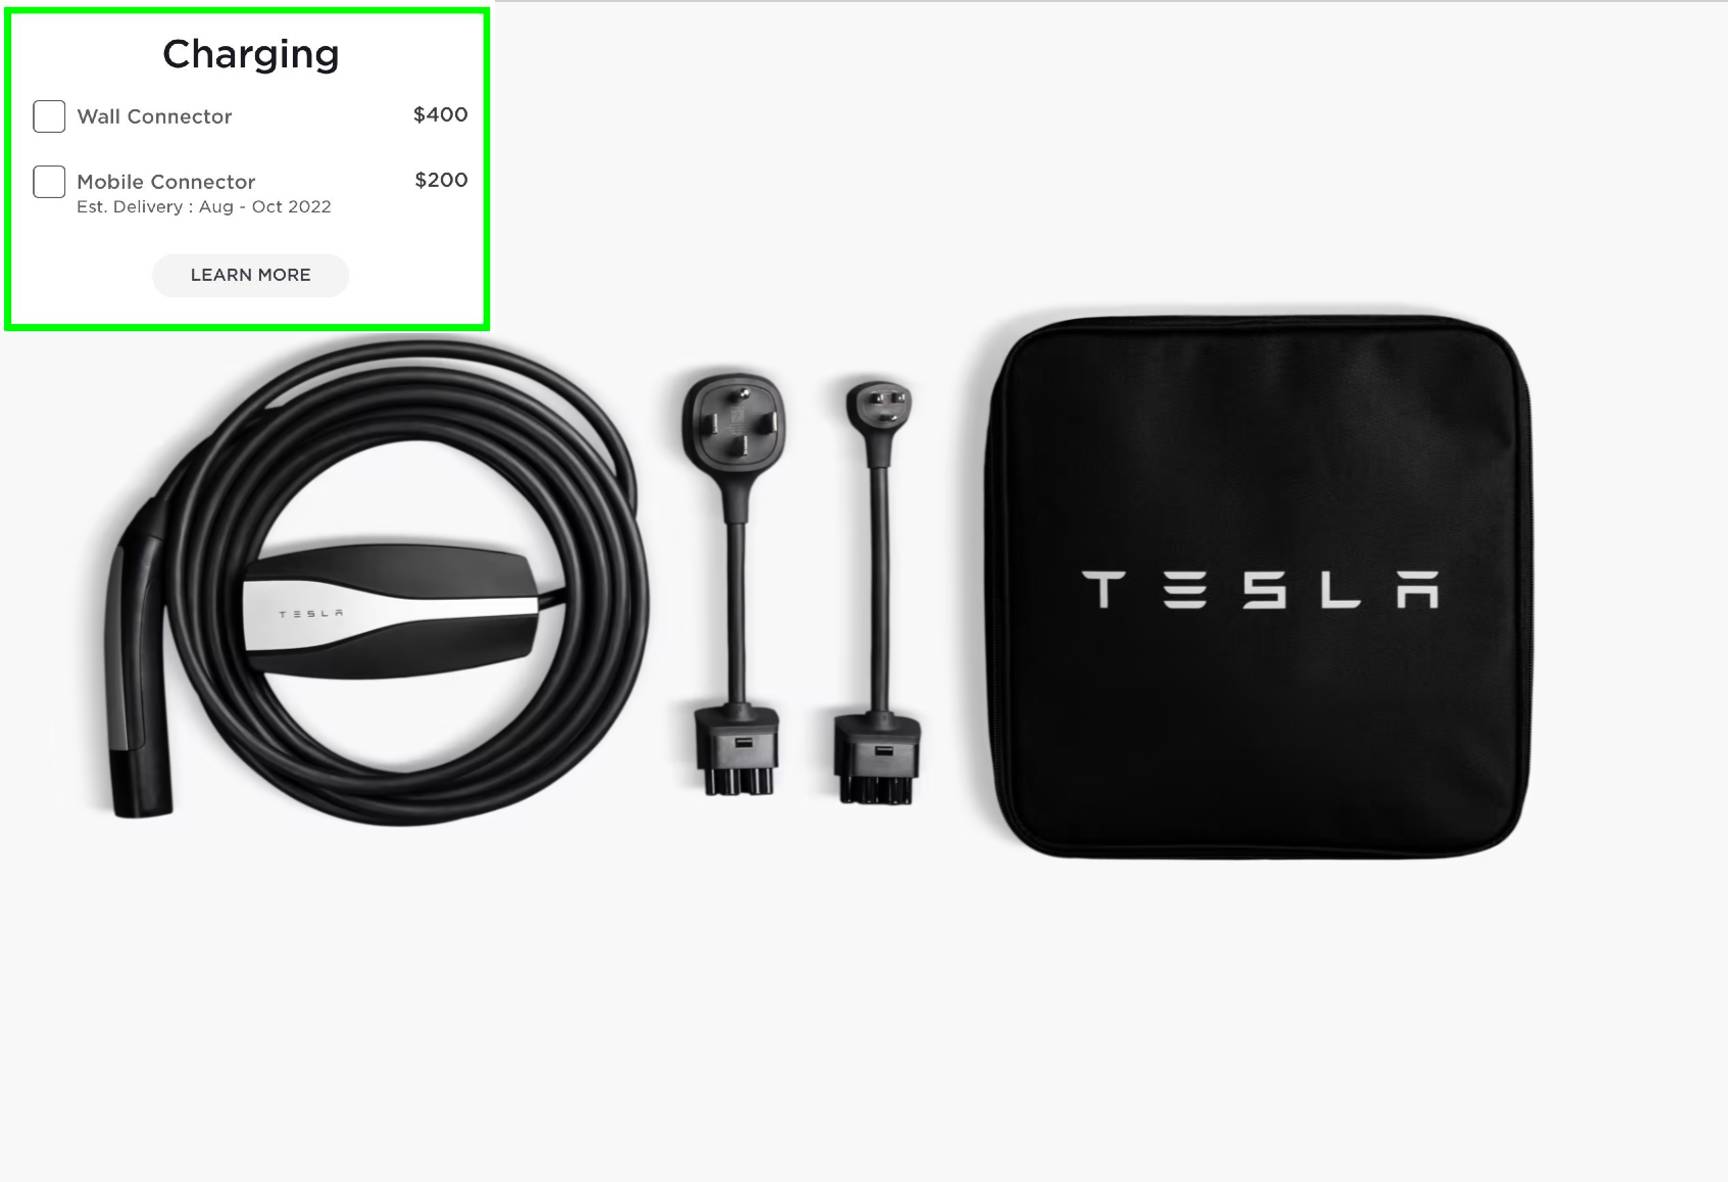 Мобильное зарядное устройство Tesla теперь можно приобрести вместе с заказом автомобиля